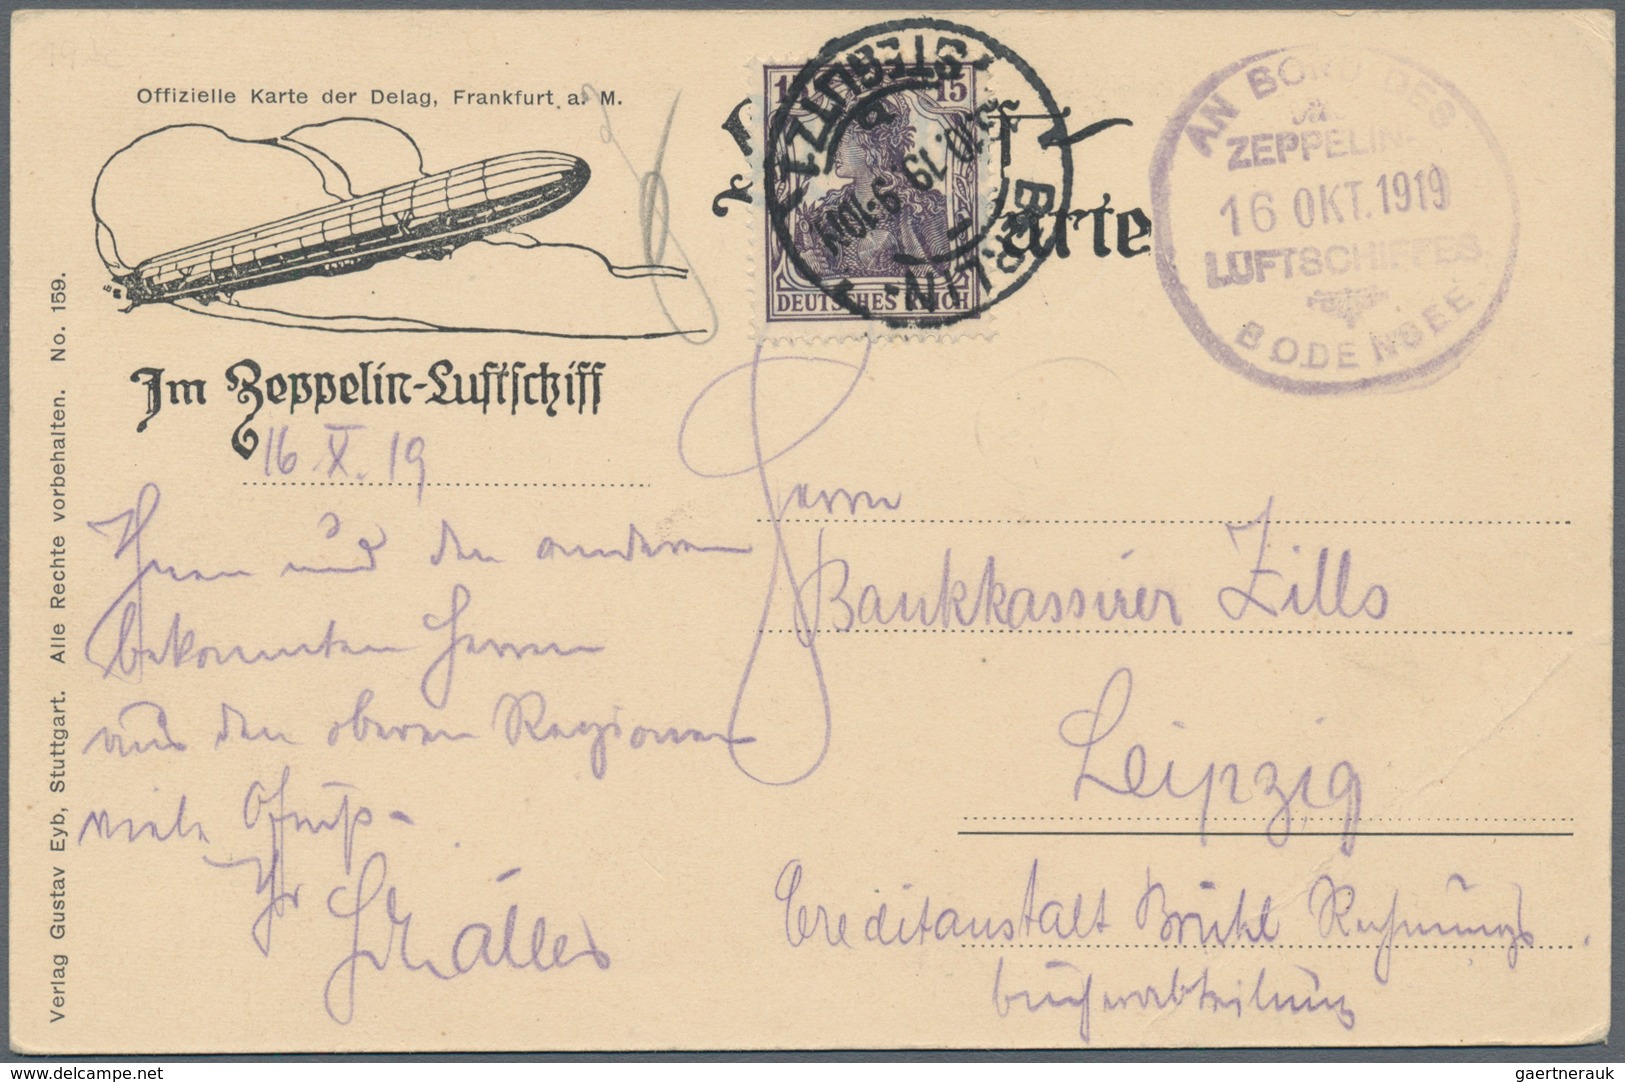 Zeppelinpost Deutschland: 1919, LZ 120 Bodensee, Delag Card From "Berlin-Steglitz" With Board Cancel - Luft- Und Zeppelinpost